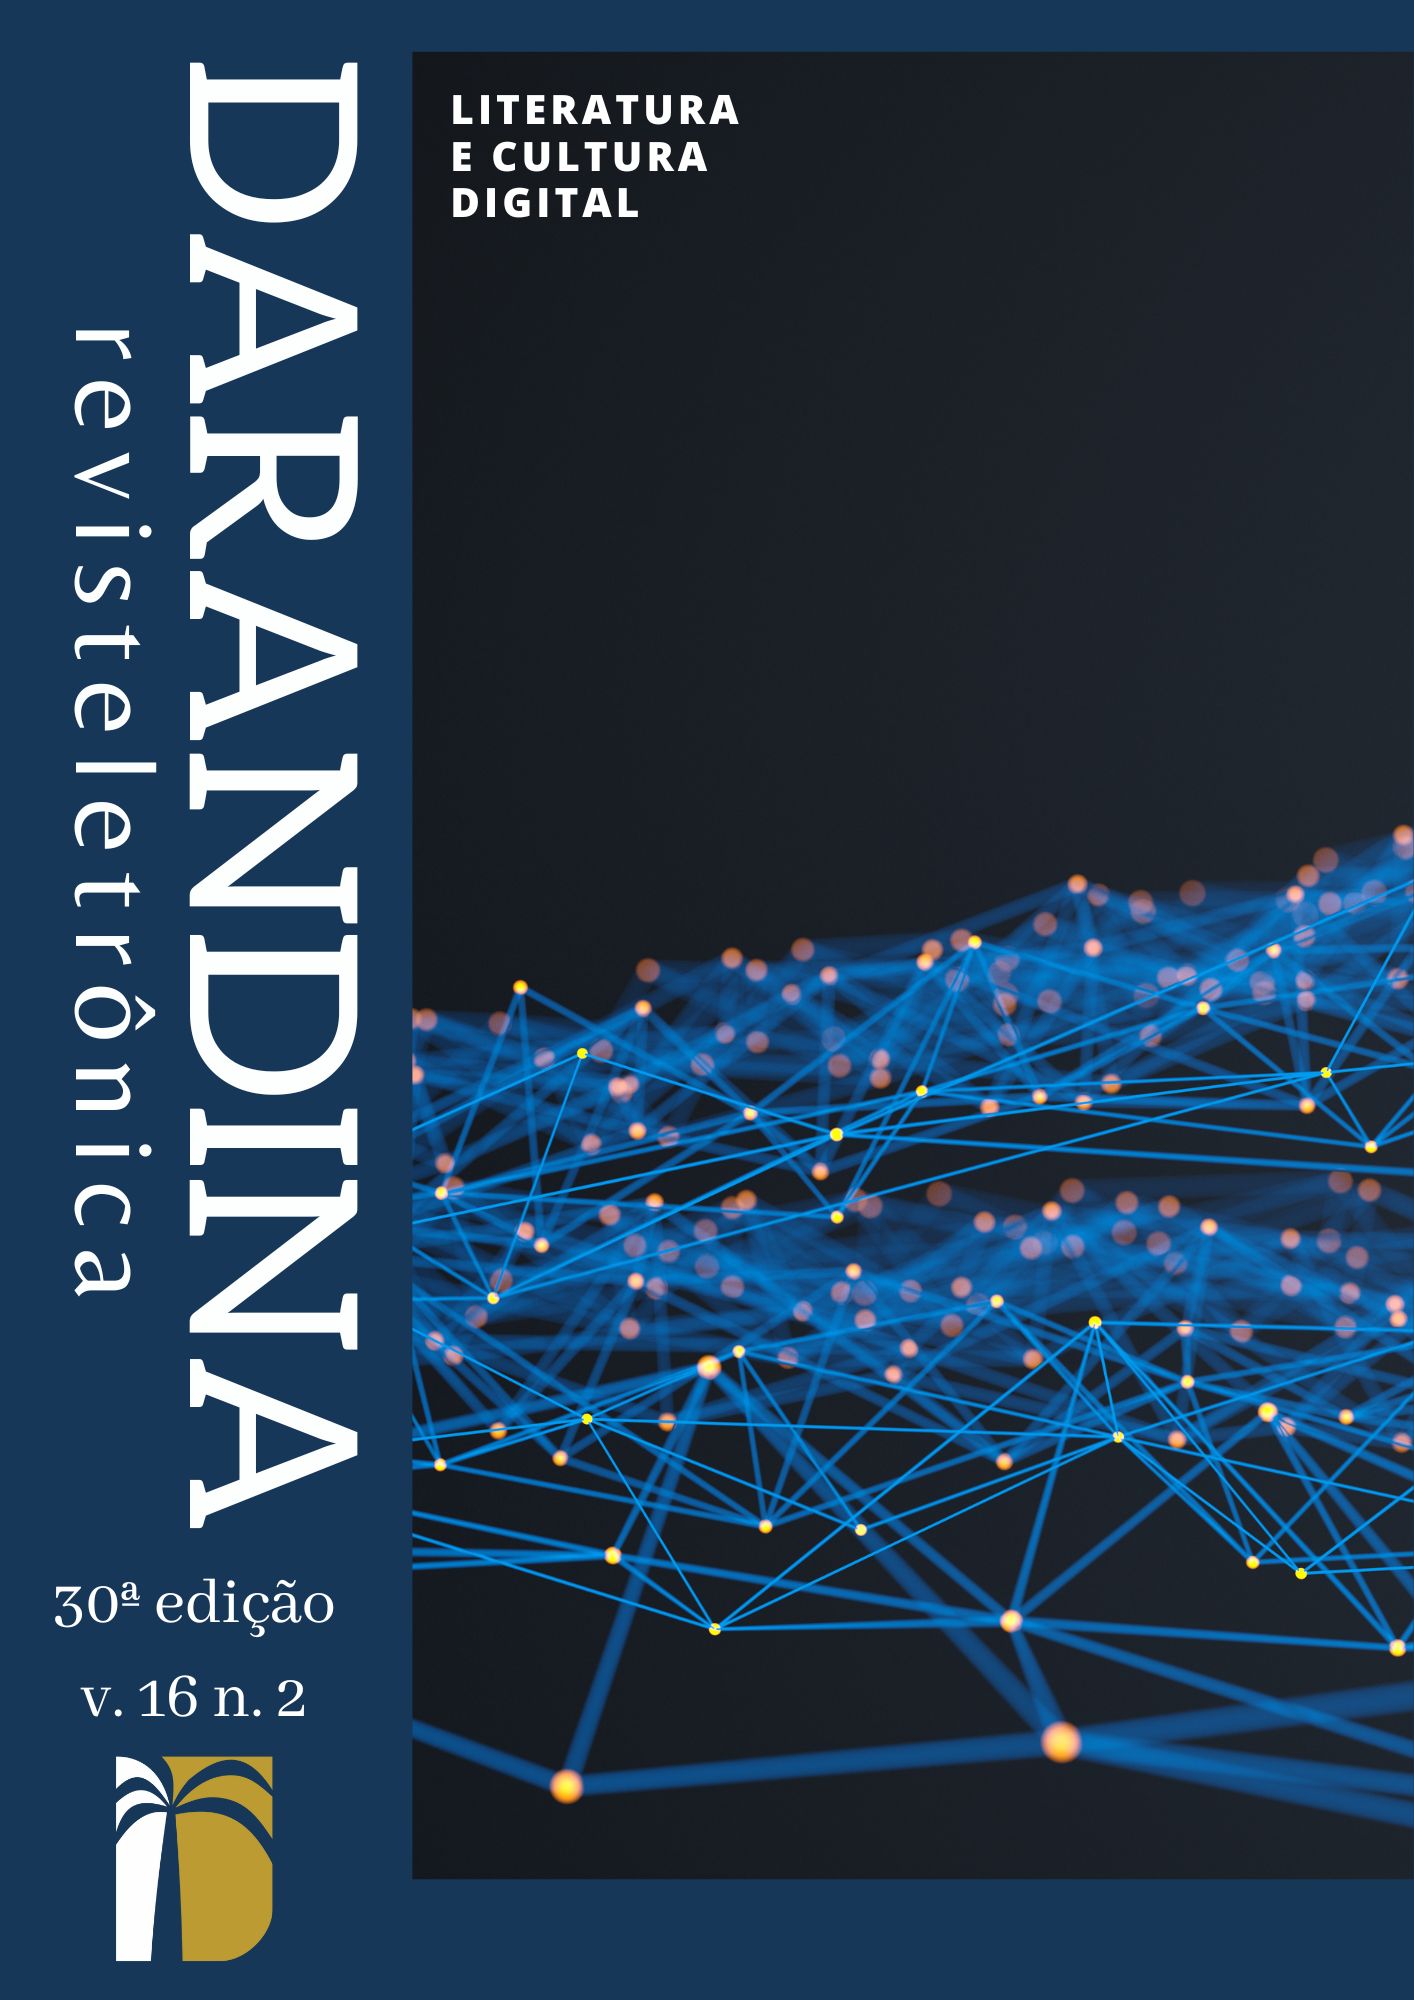 Capa da 30ª edição da Darandina Revisteletrônica - Literatura e cultura digital